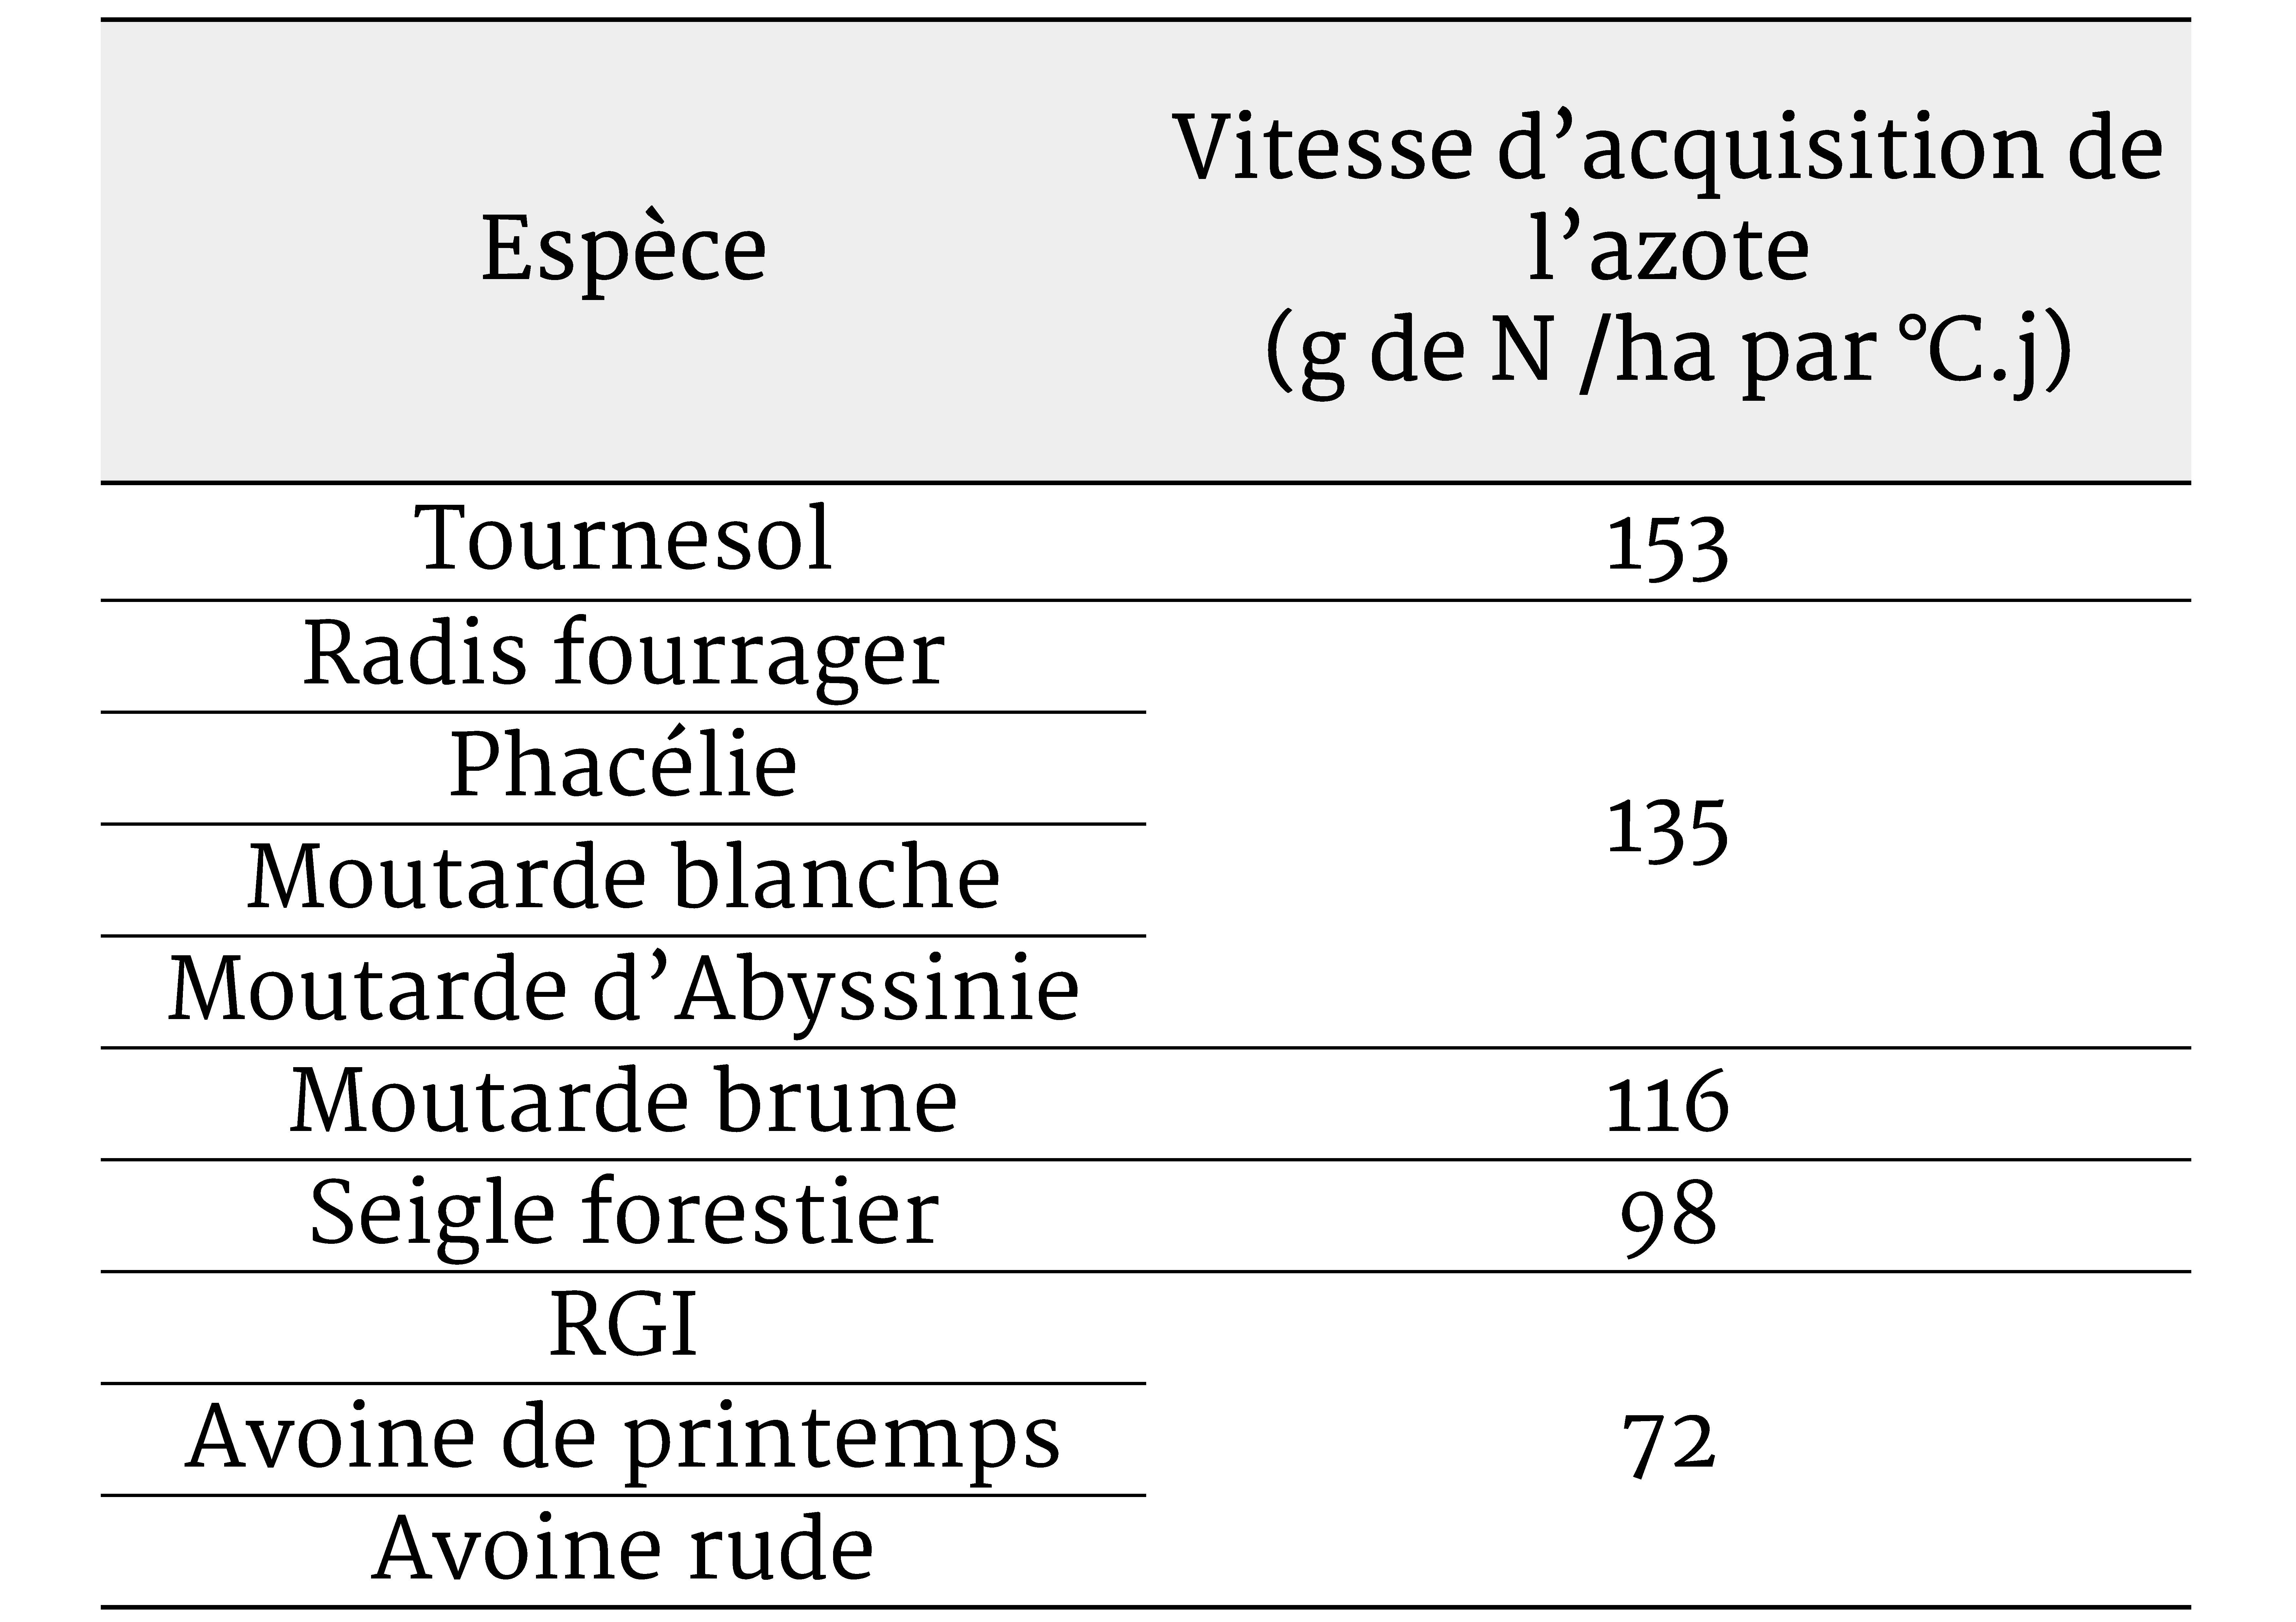 D'après Tribouillois (2014) Vitesse d'acquisition potentielle de l'azote par espèce en conditions non limitantes